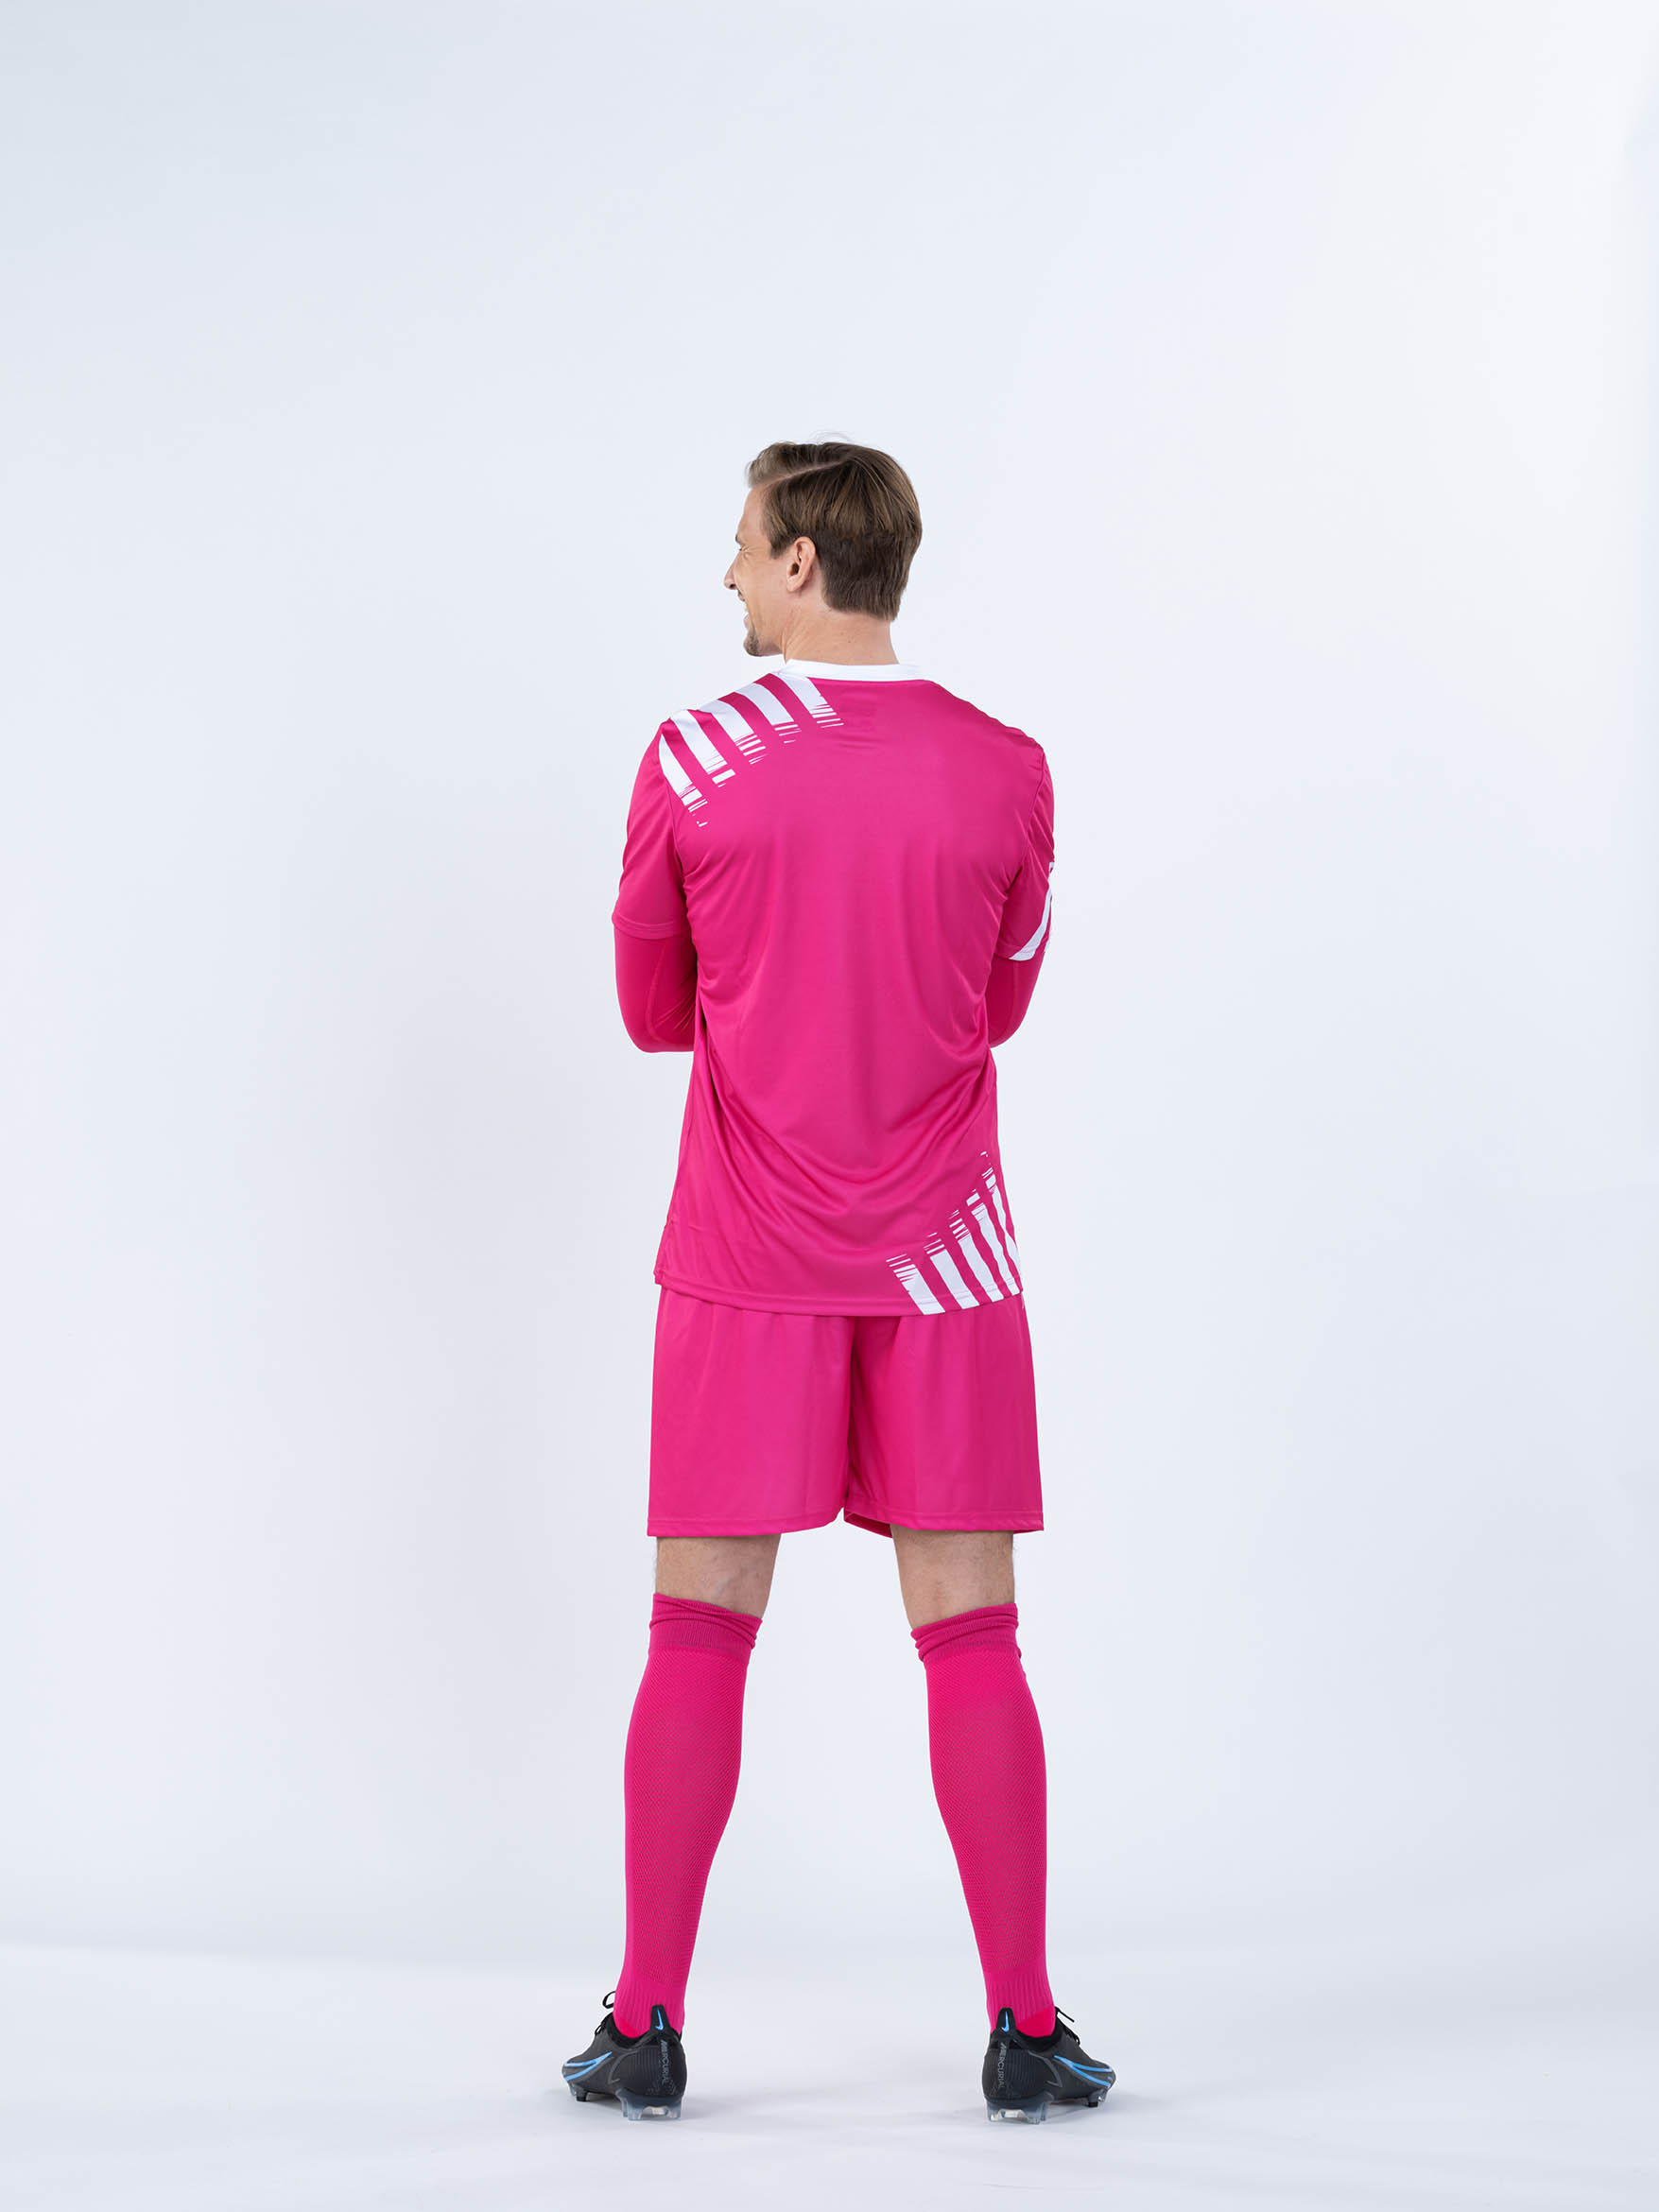 BWT One Fußballtrikot Rückseite inkl. T-Shirt, Short und Stutzen in magenta